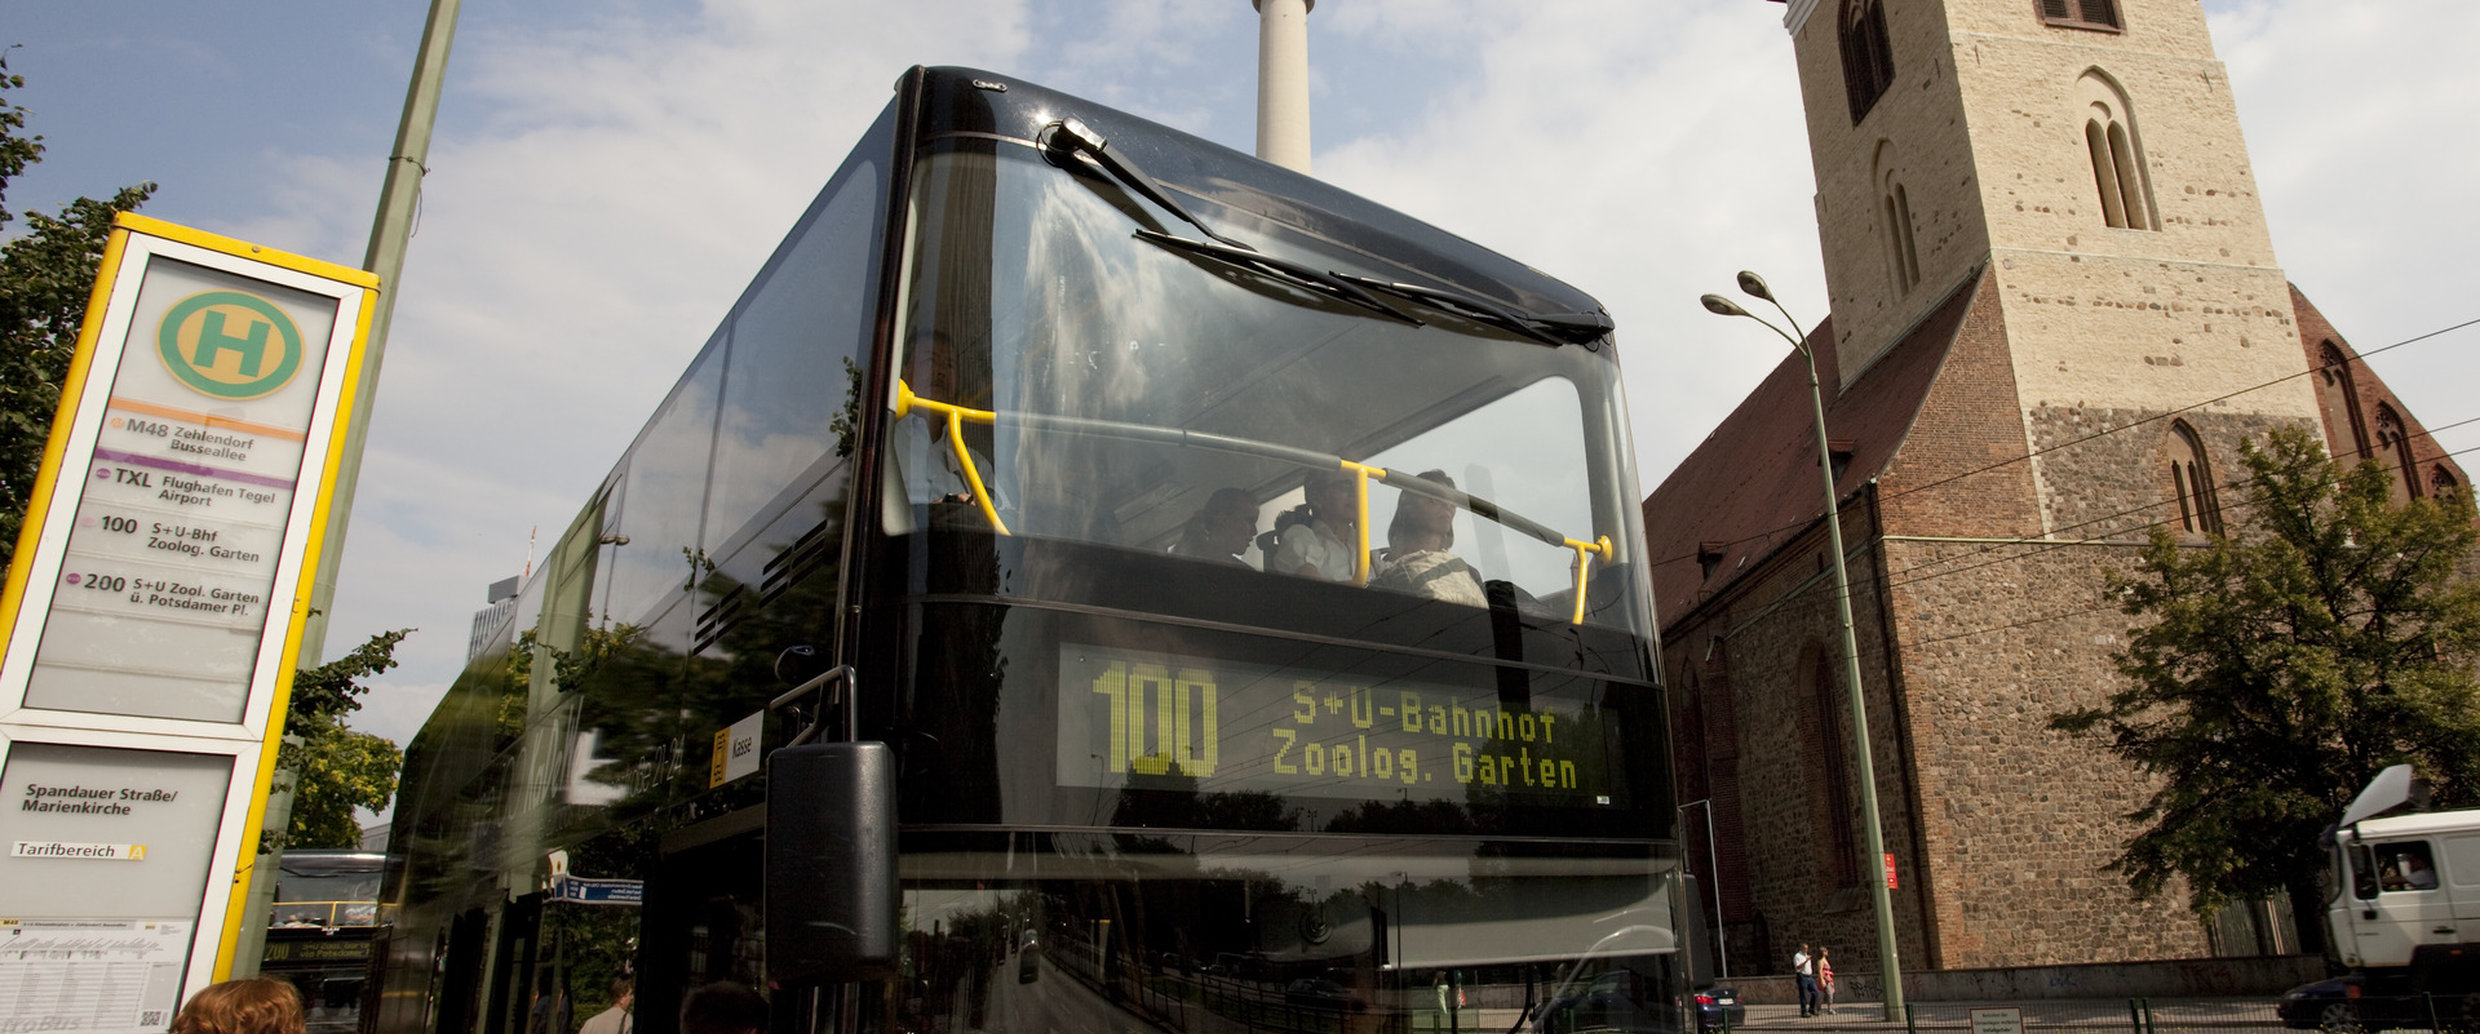 Berlin Garten Der Welt Neu Explore Berlin by Bus 100